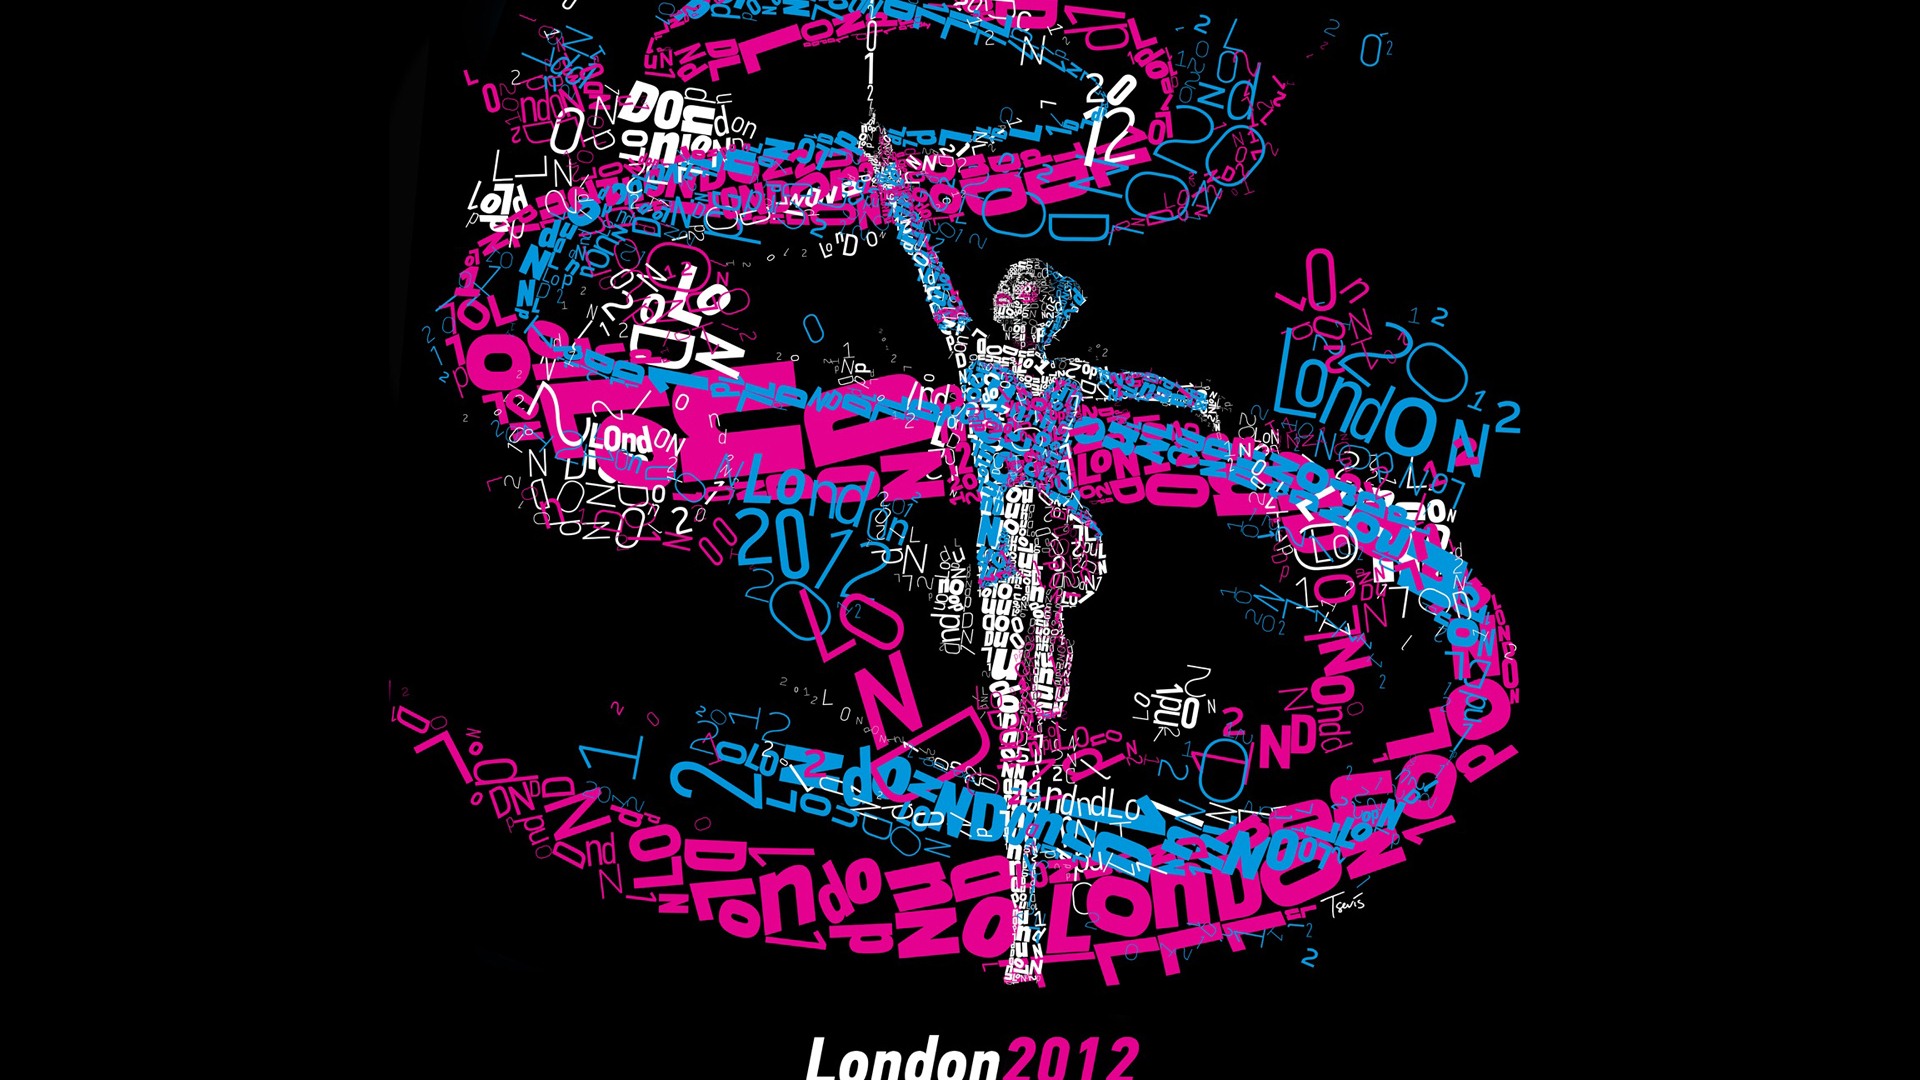 Londres 2012 Olimpiadas fondos temáticos (1) #23 - 1920x1080